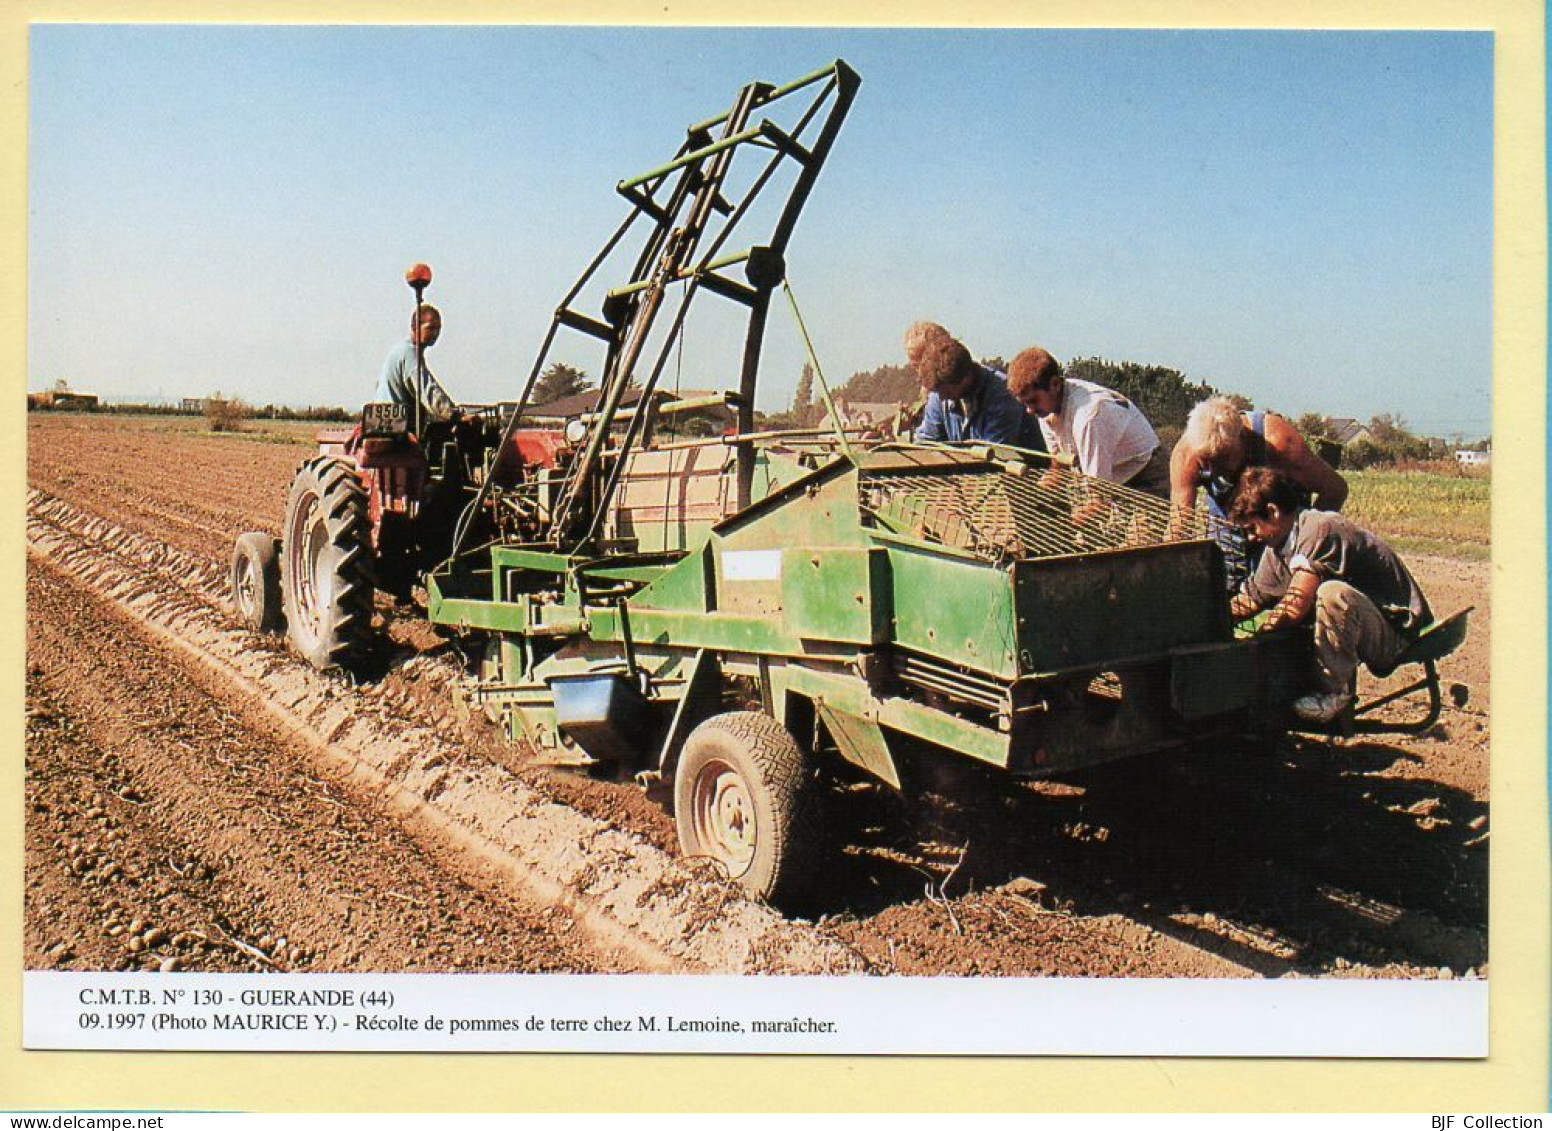 Récolte De Pommes De Terre Chez Mr LEMOINE Maraîcher / GUERANDE (44) (MAURICE Y.) C.M.T.B. N° 130 / 400 Ex (CARTOUEST) - Landbouwers